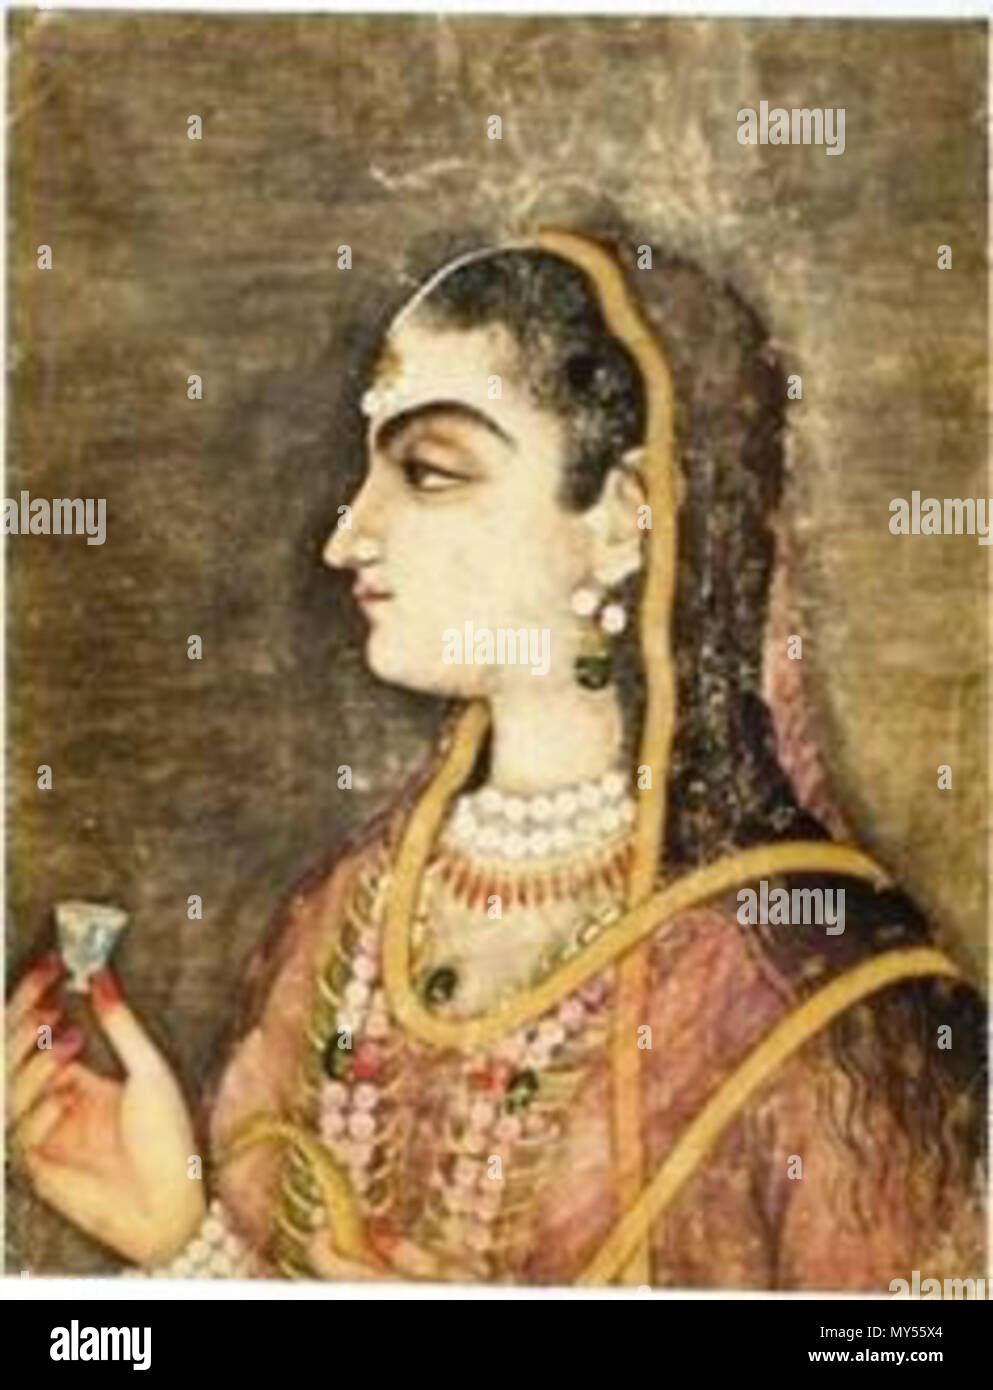 . Inglese: Jahanzeb 'Jani' Banu iniziata (d. 1705) era una principessa Mughal come la figlia del principe ereditario Dara Shikoh e la sua consorte Nadira Banu iniziata. Affettuosamente noto come Jani iniziata, anche lei era la nipote dell'imperatore Shah Jahan e Imperatrice Mumtaz Mahal. Lo scrittore italiano e viaggiatore, Niccolao Manucci, che hanno lavorato sotto il suo padre, descritto come il suo essere bello e coraggioso. In 1669, ha sposato il suo primo cugino, Principe Azam Shah, l'apparente erede imperatore Aurangzeb che brevemente divenne imperatore Mughal nel 1707. Il 30 aprile 2010, 16:37:01. Sconosciuto 265 Jahanzeb Banu iniziata Foto Stock